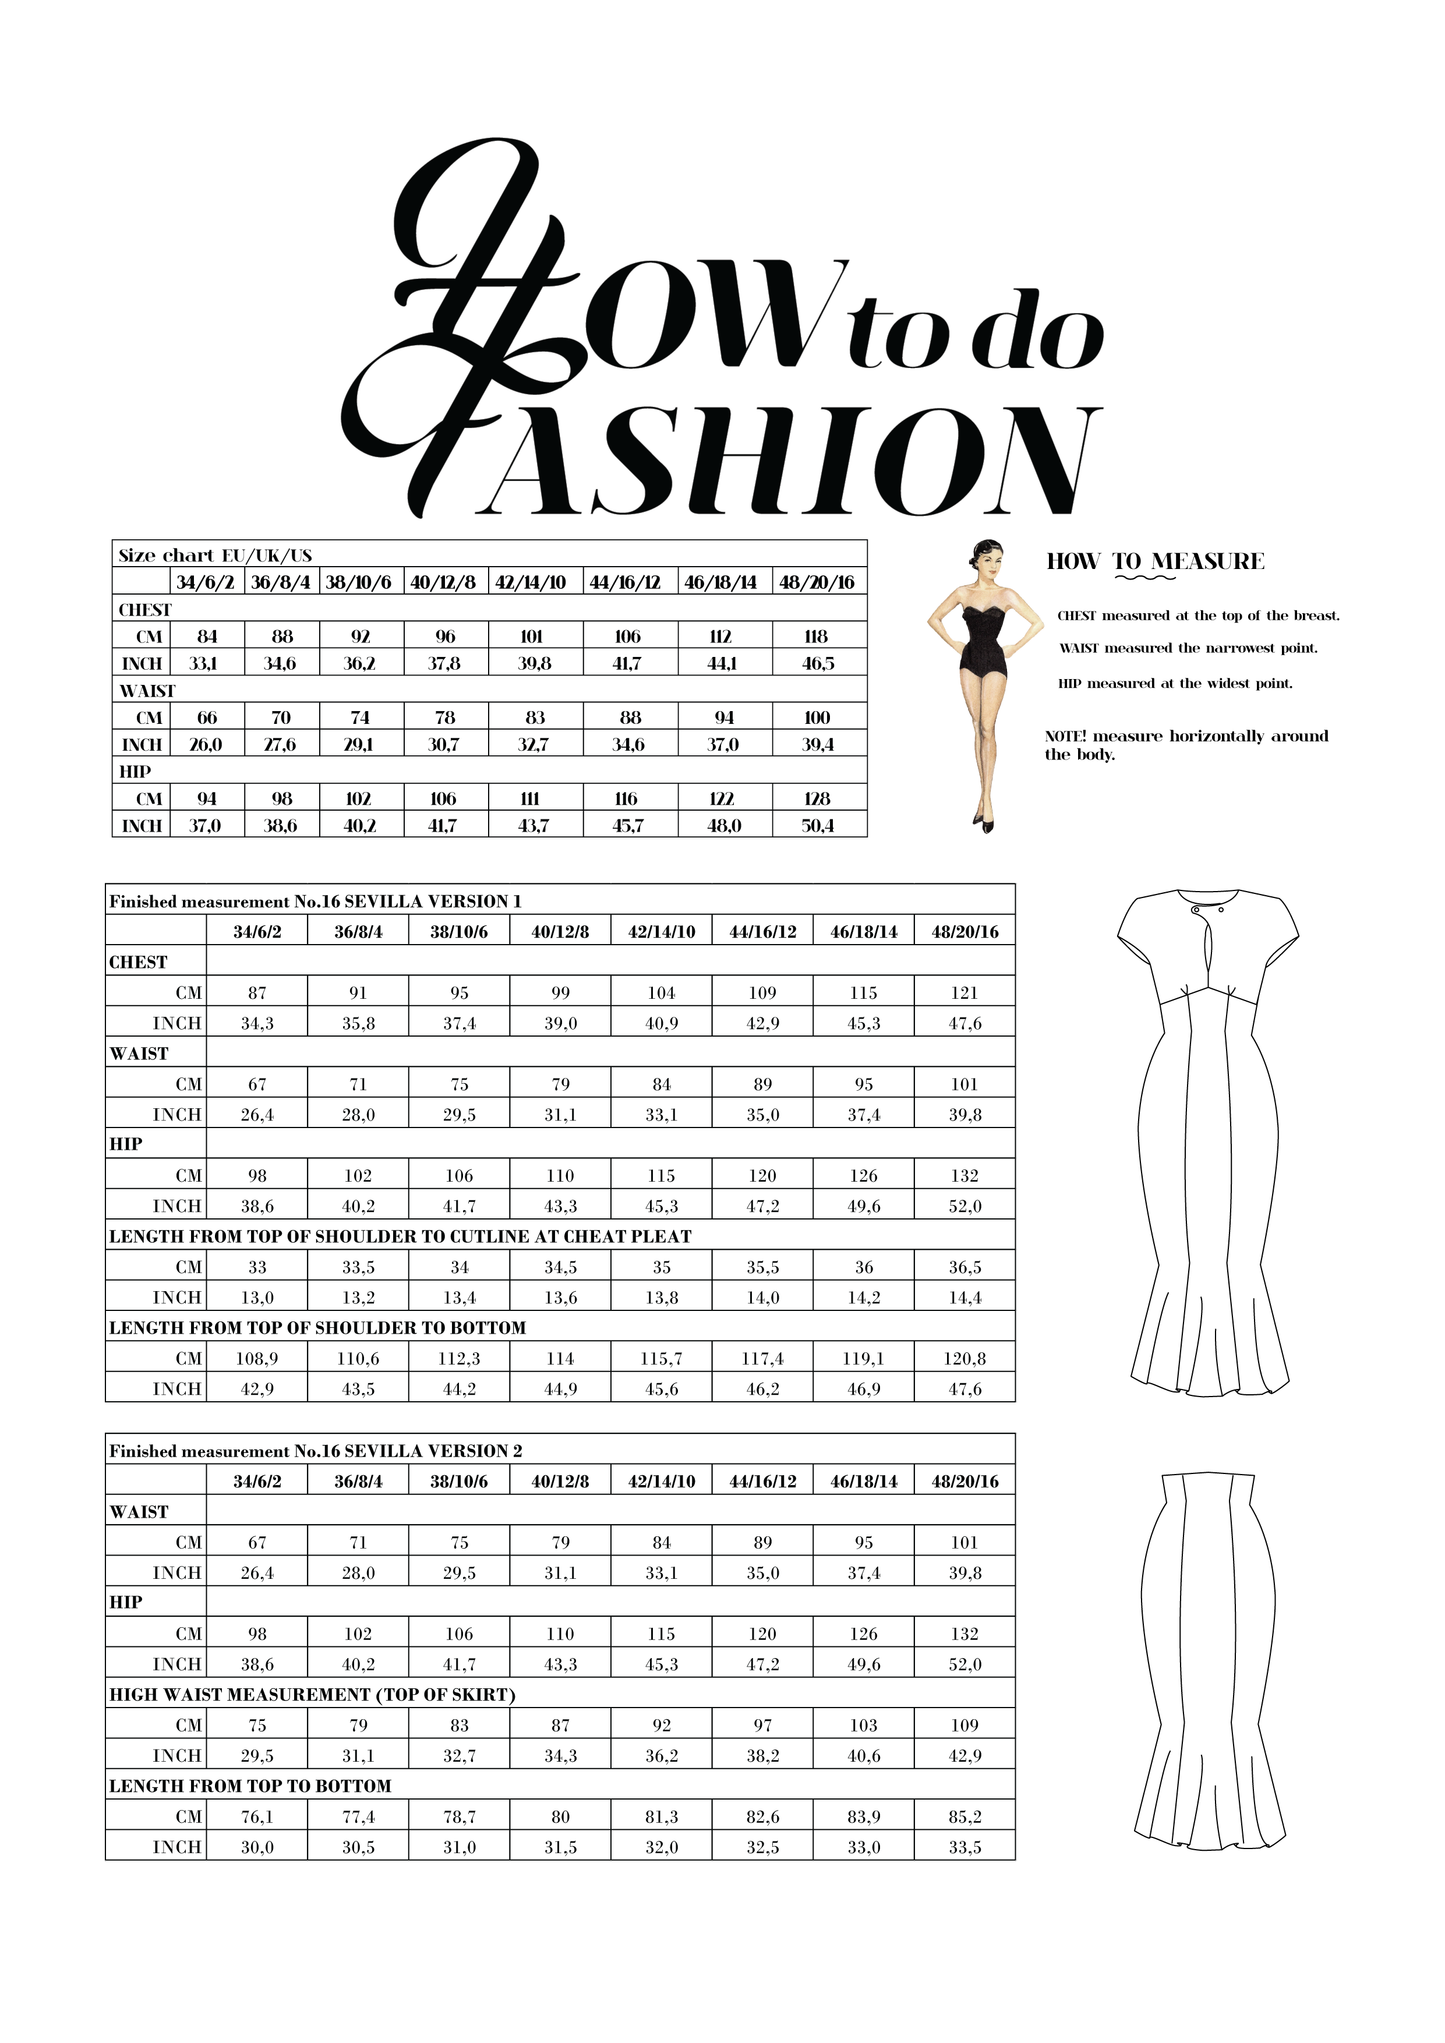 How To Do Fashion No. 16 Sevilla Dress